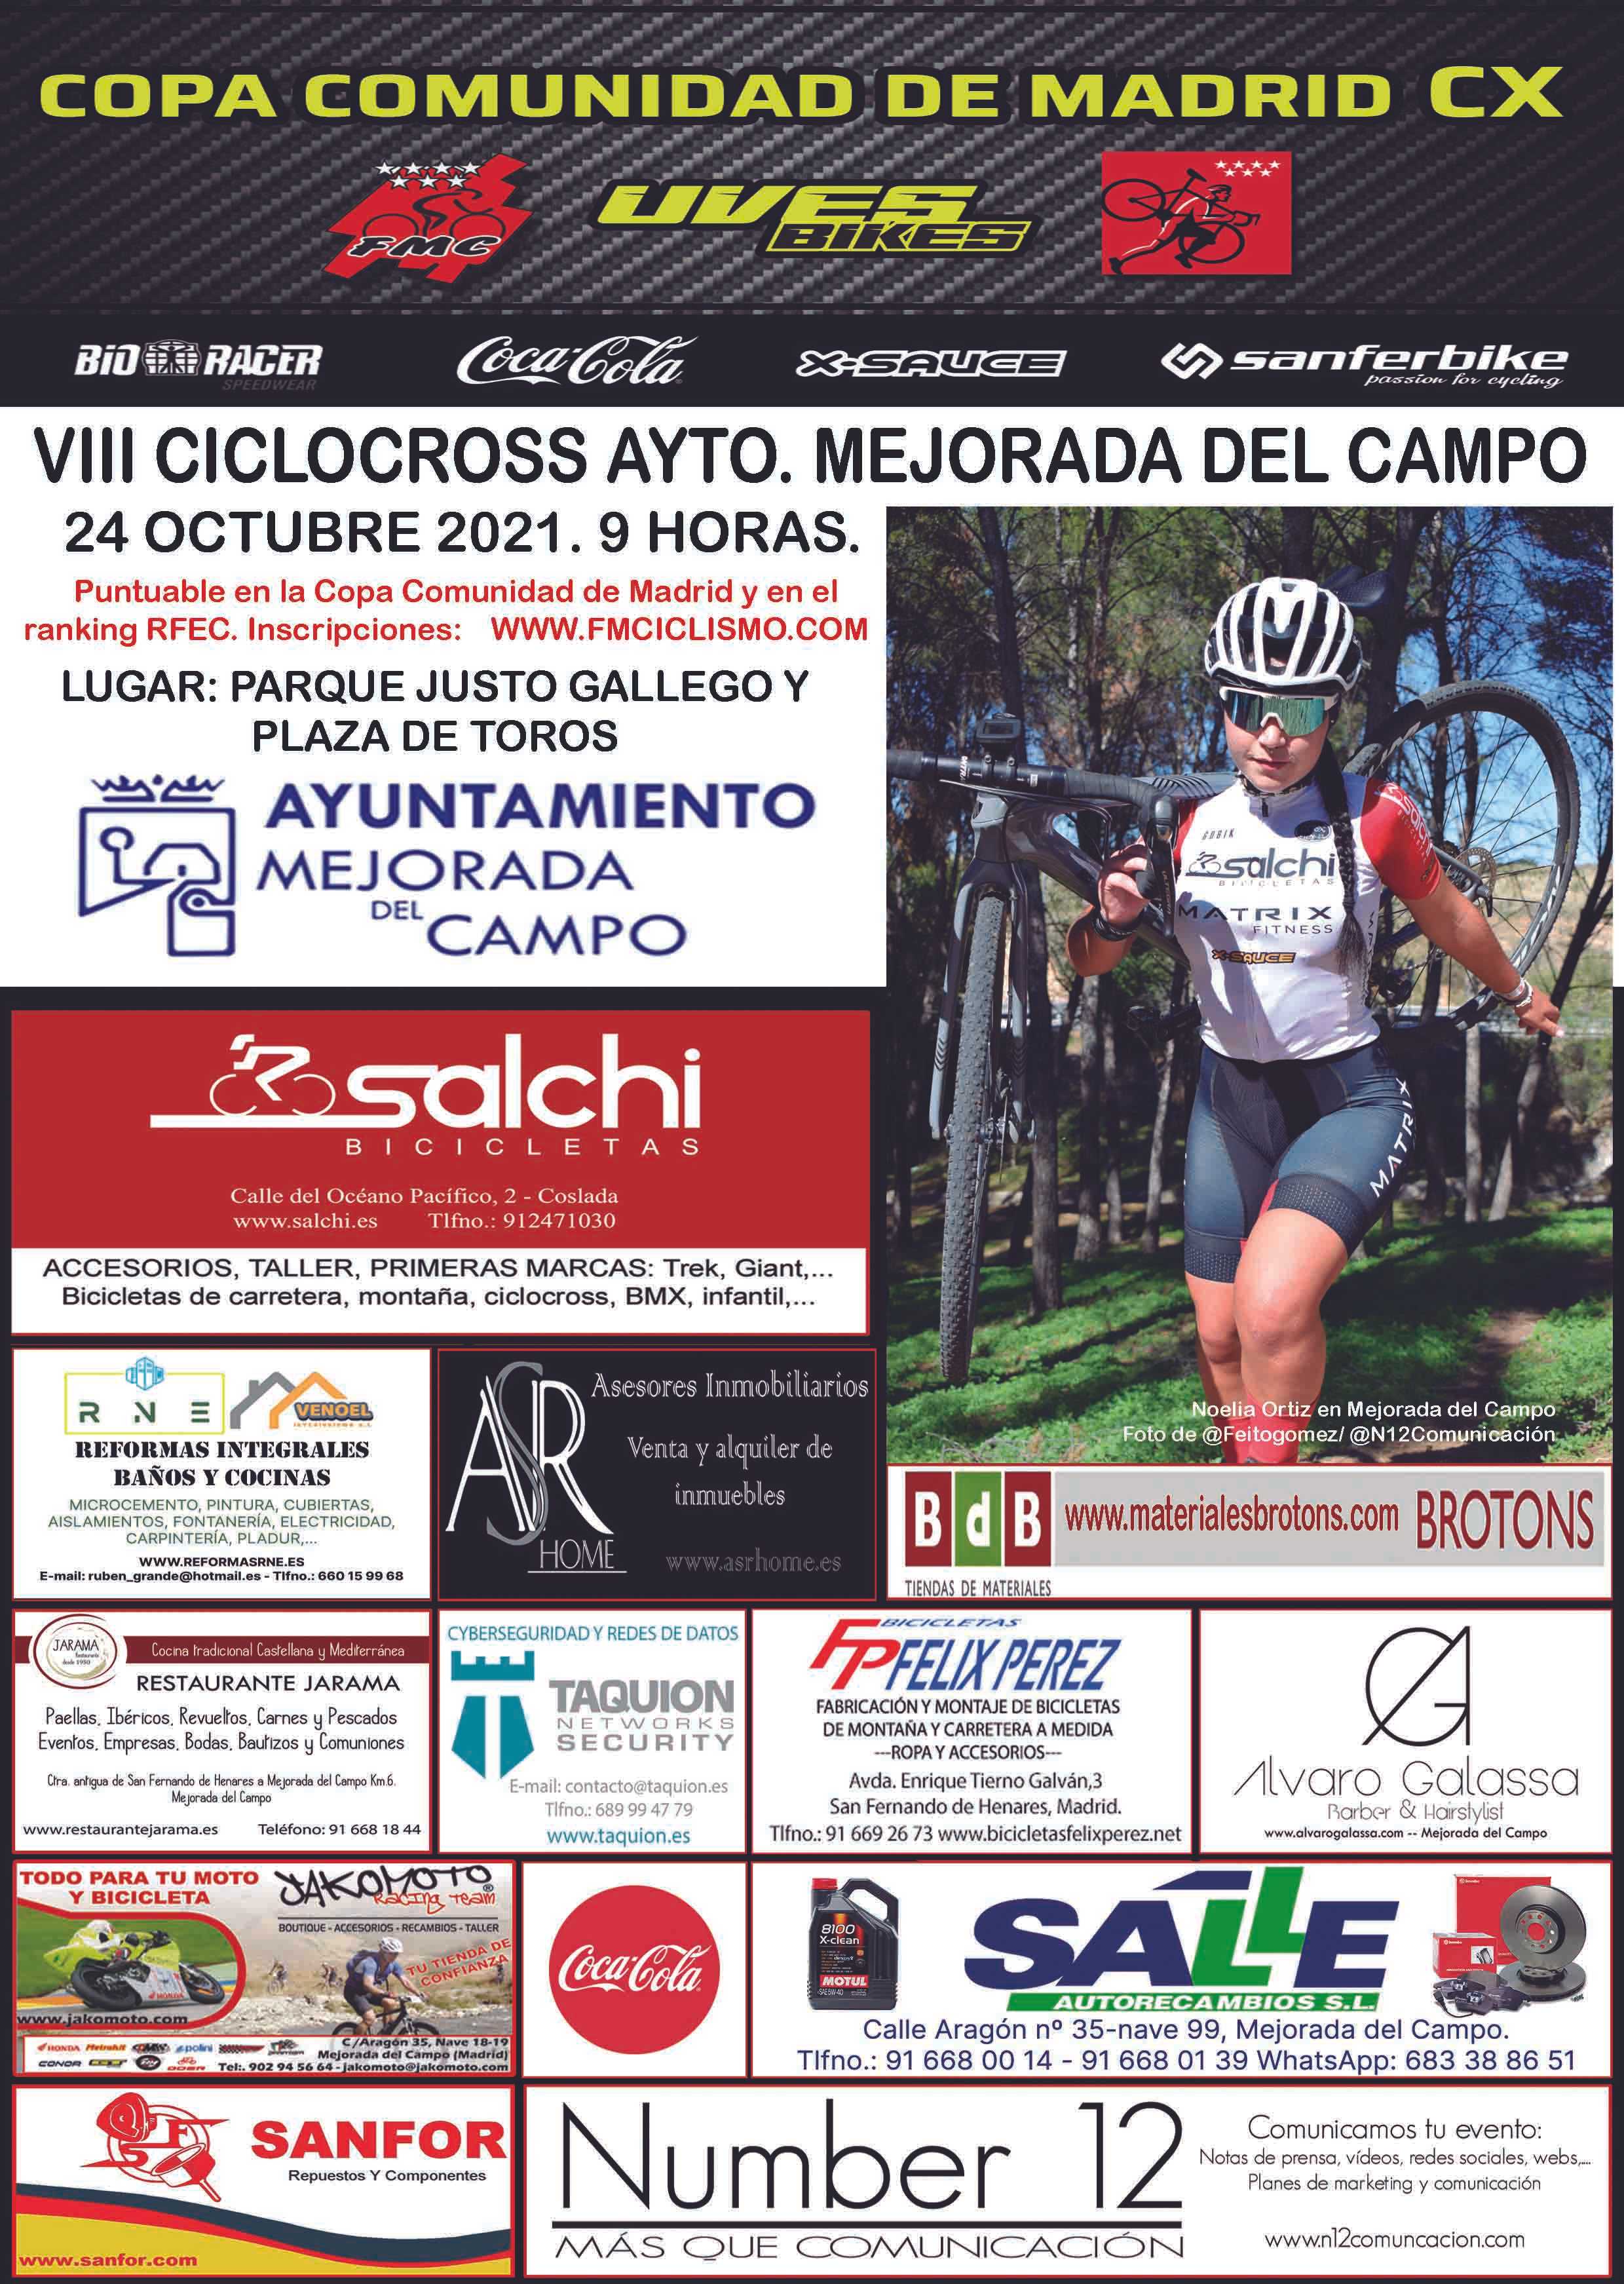 Mejorada del Campo regresa con el mejor ciclocross